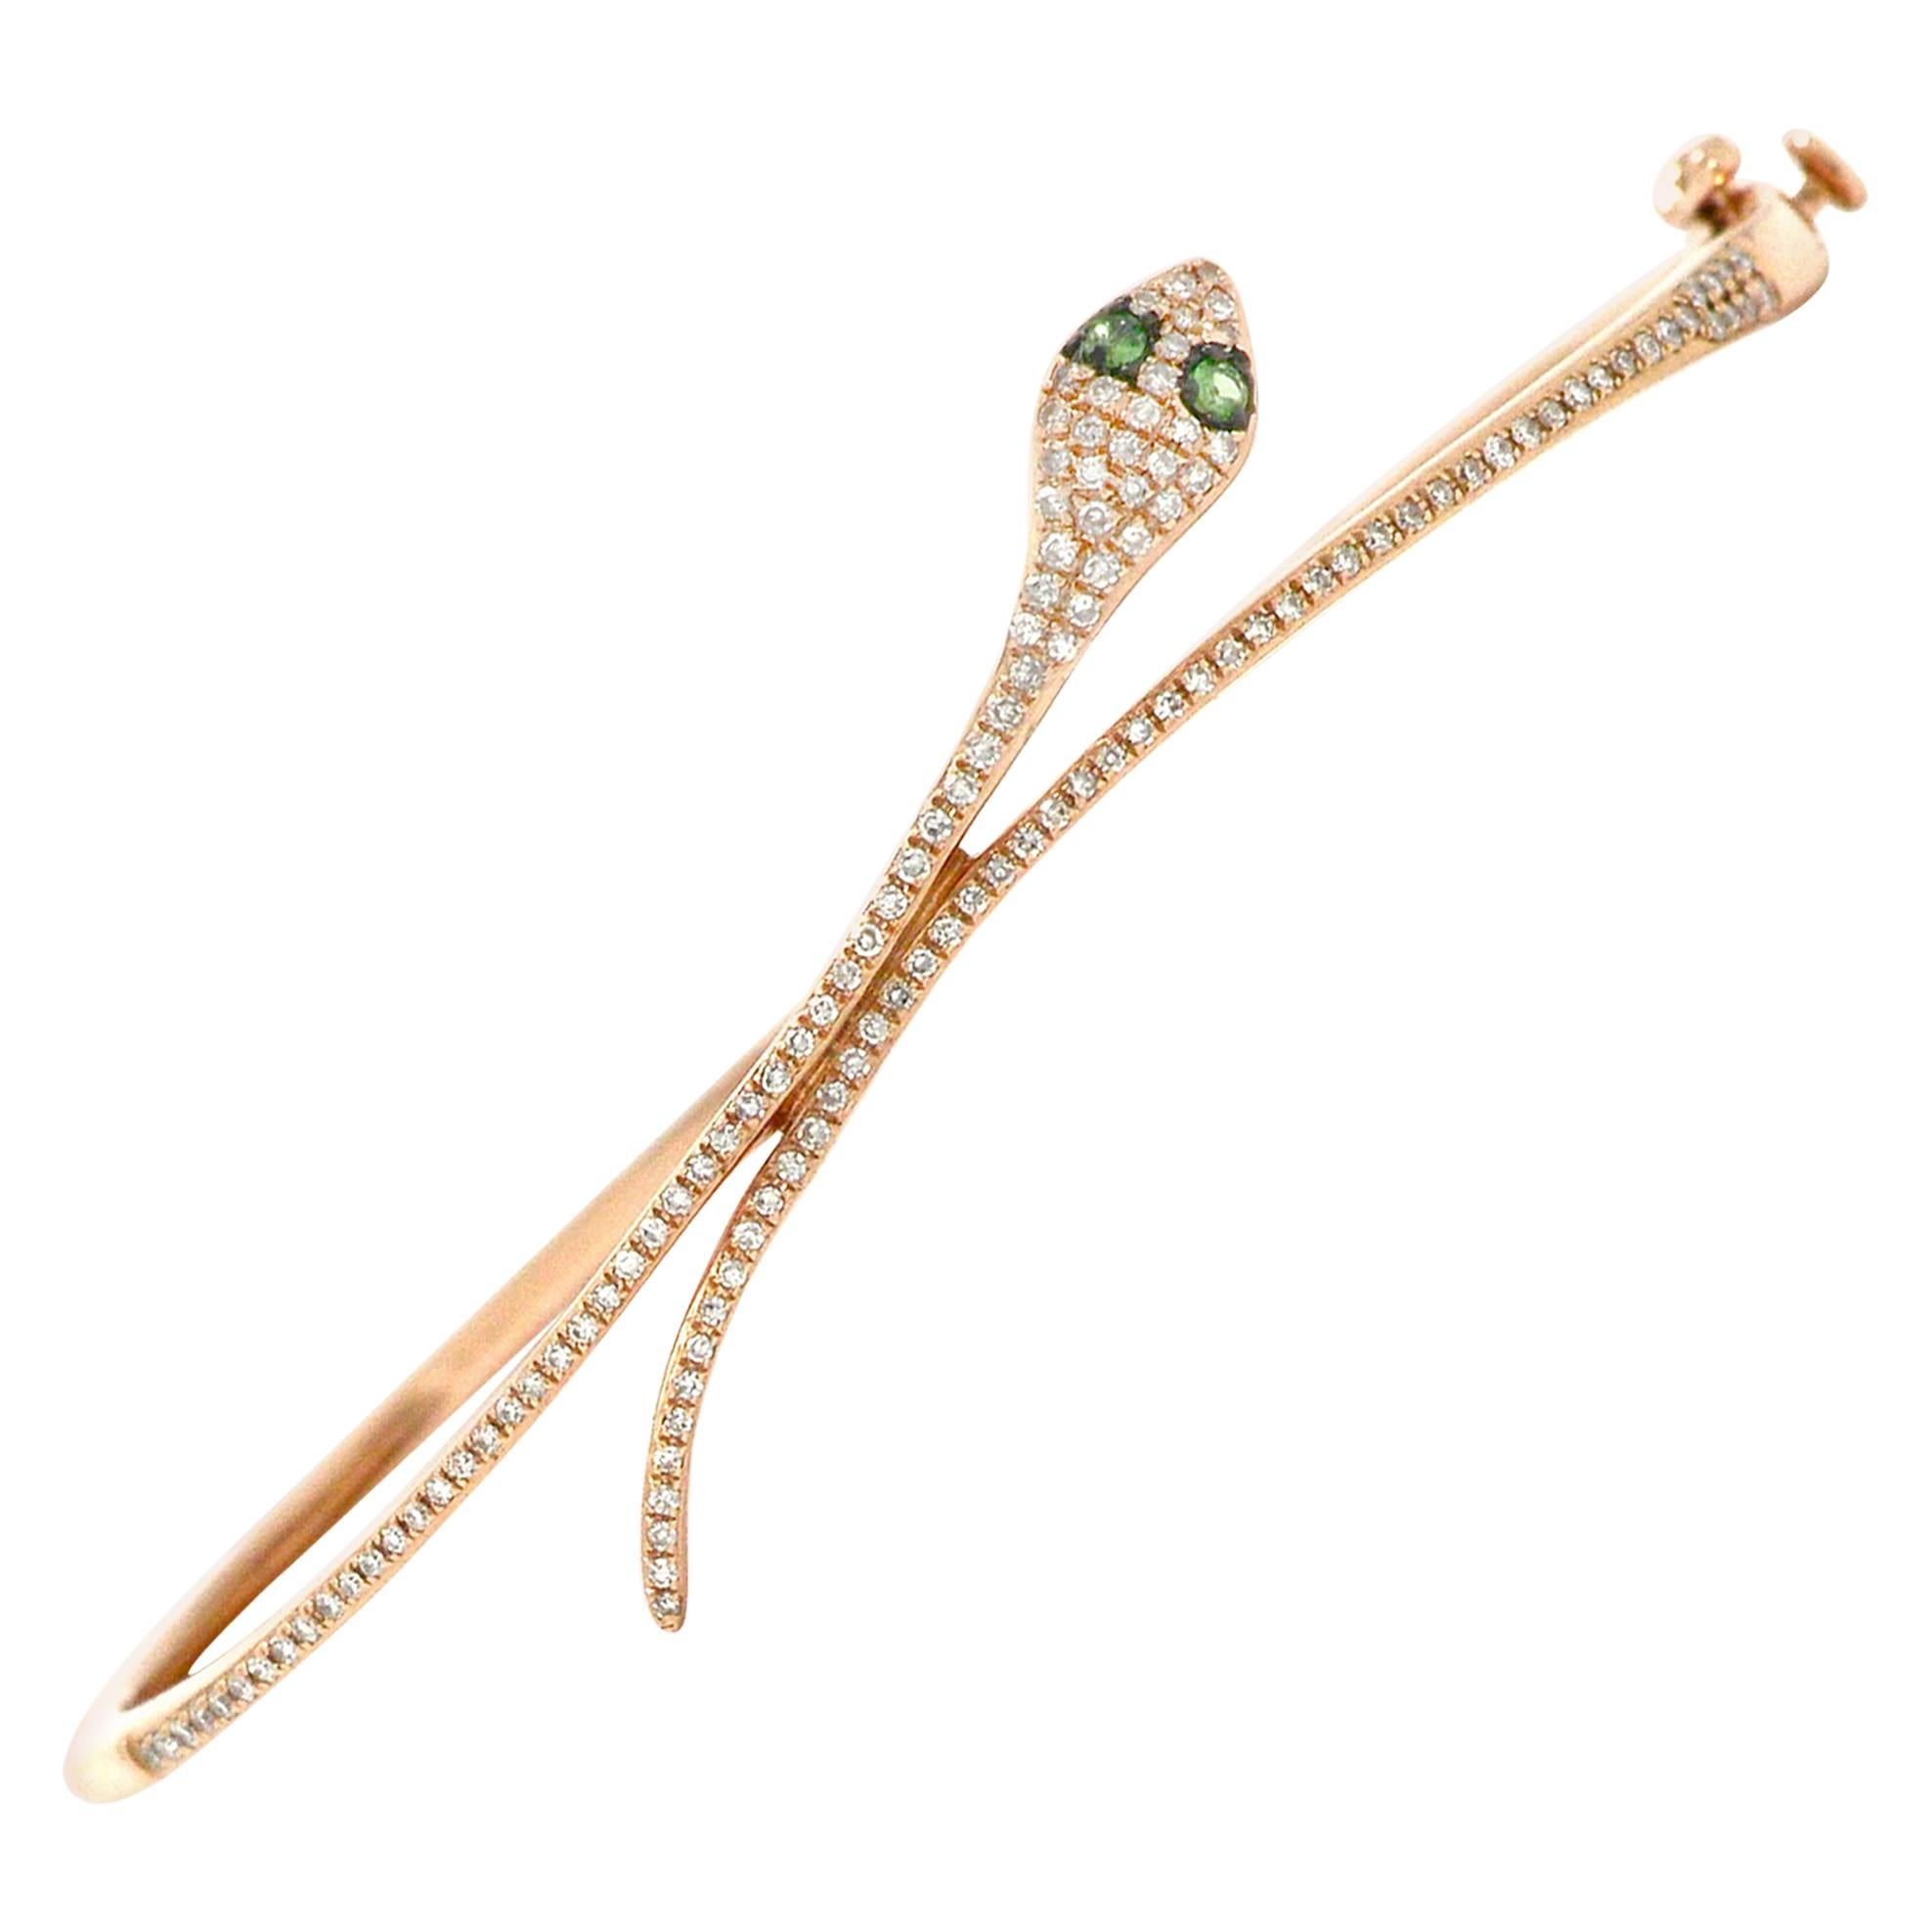 Rose Gold Pave' Diamond Snake Bracelet Bangle Cuff Cleopatra Egyptian Revival